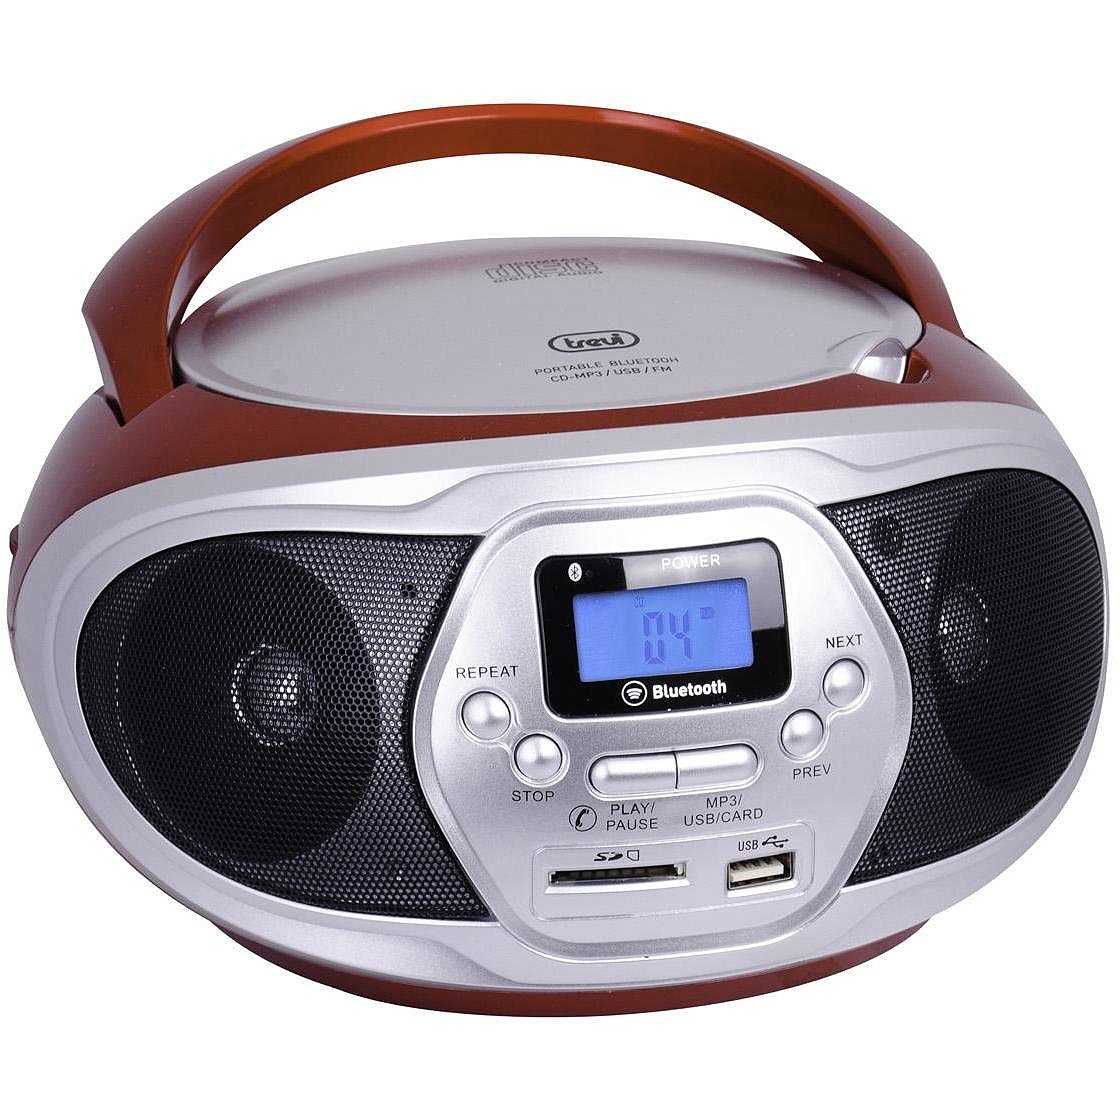 Trevi CMP 548 BT Stereo portatile Lettore CD/mp3 Radio FM USB Aux-in  Bluetooth colore Nero - Audio e Hi-Fi radio - ClickForShop